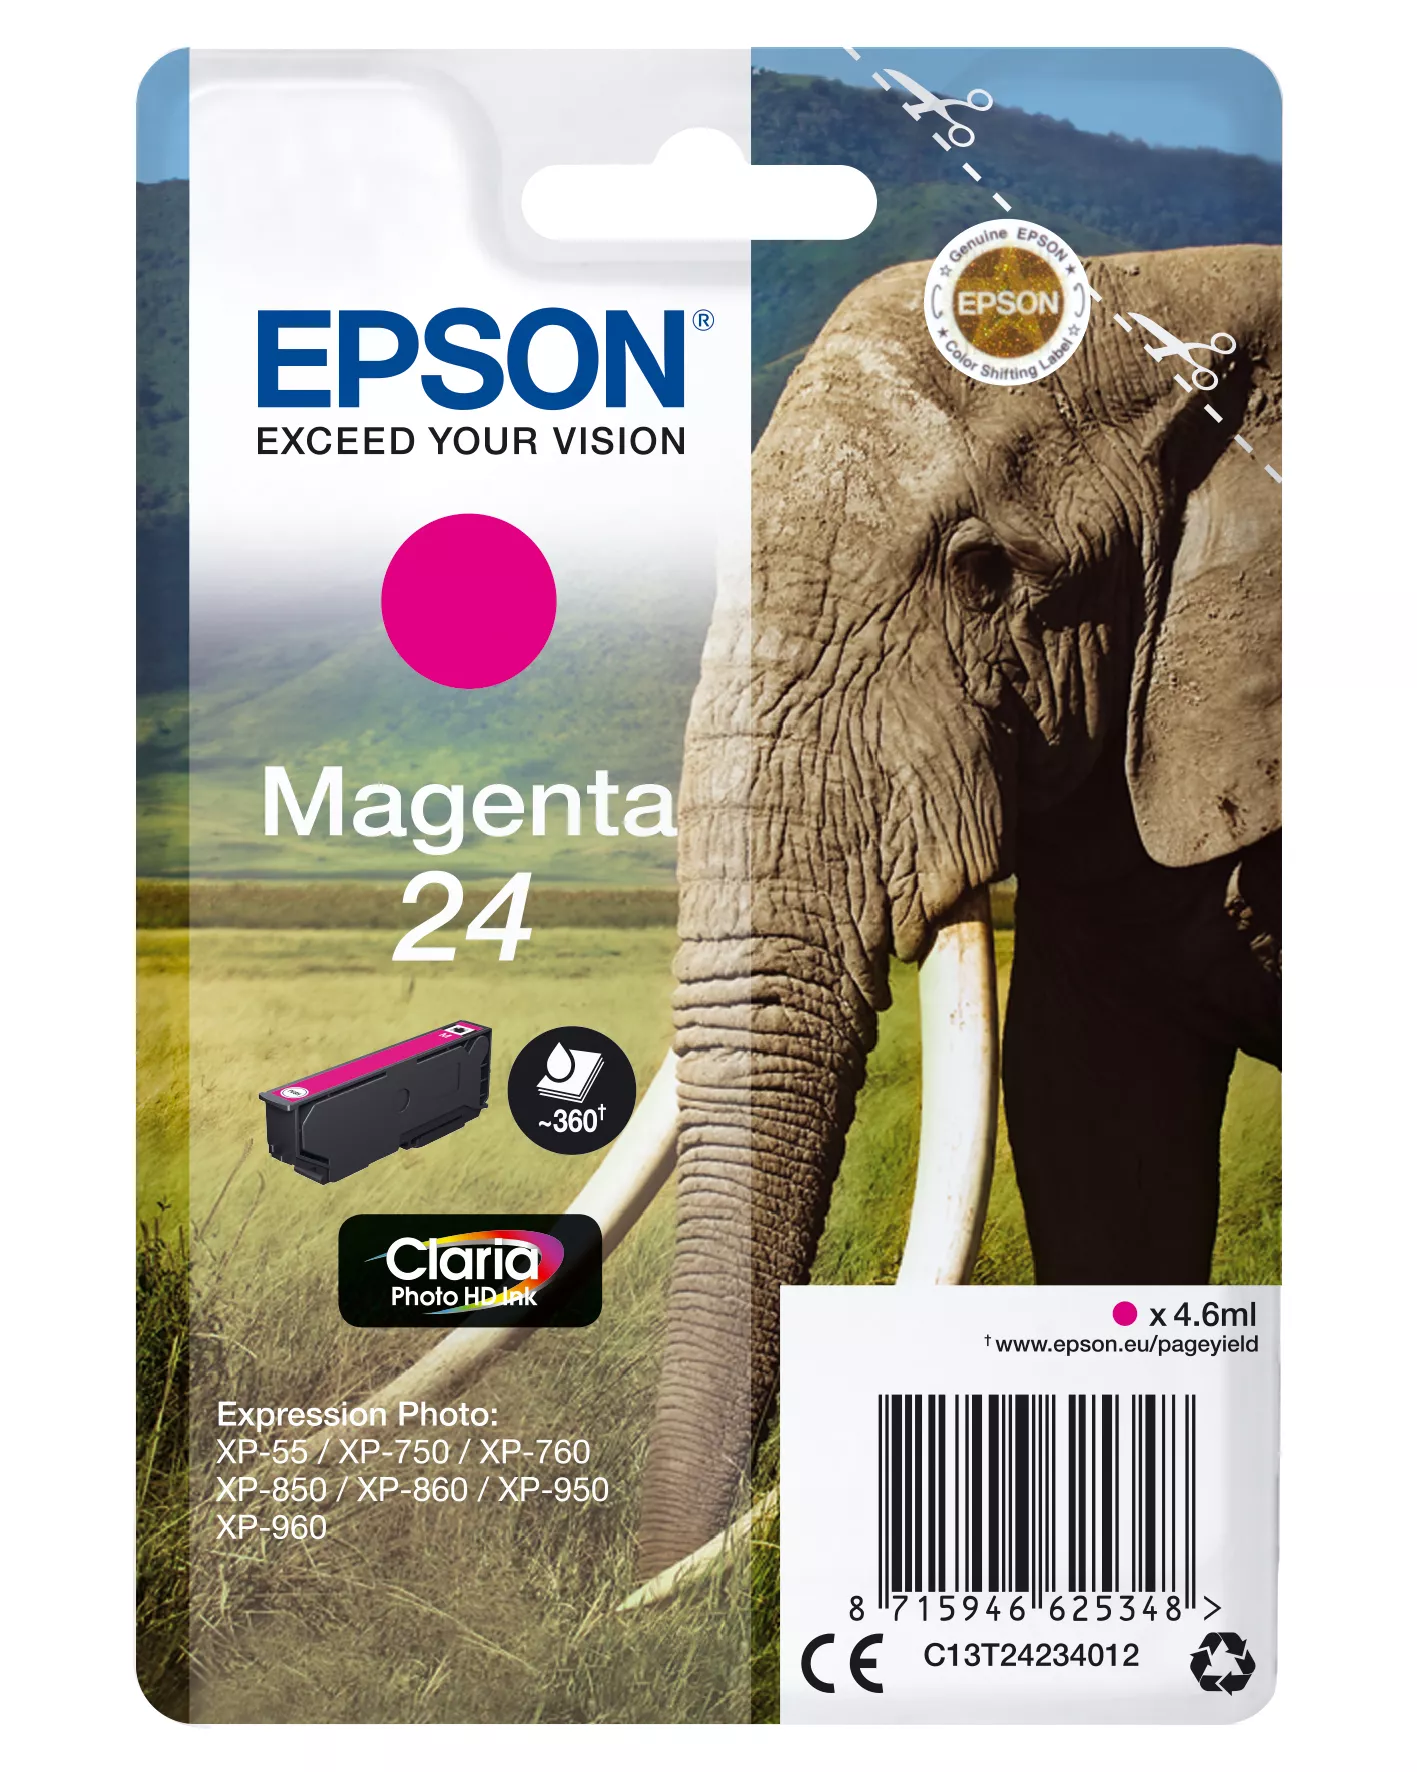 Revendeur officiel EPSON 24 cartouche d encre magenta capacité standard 4